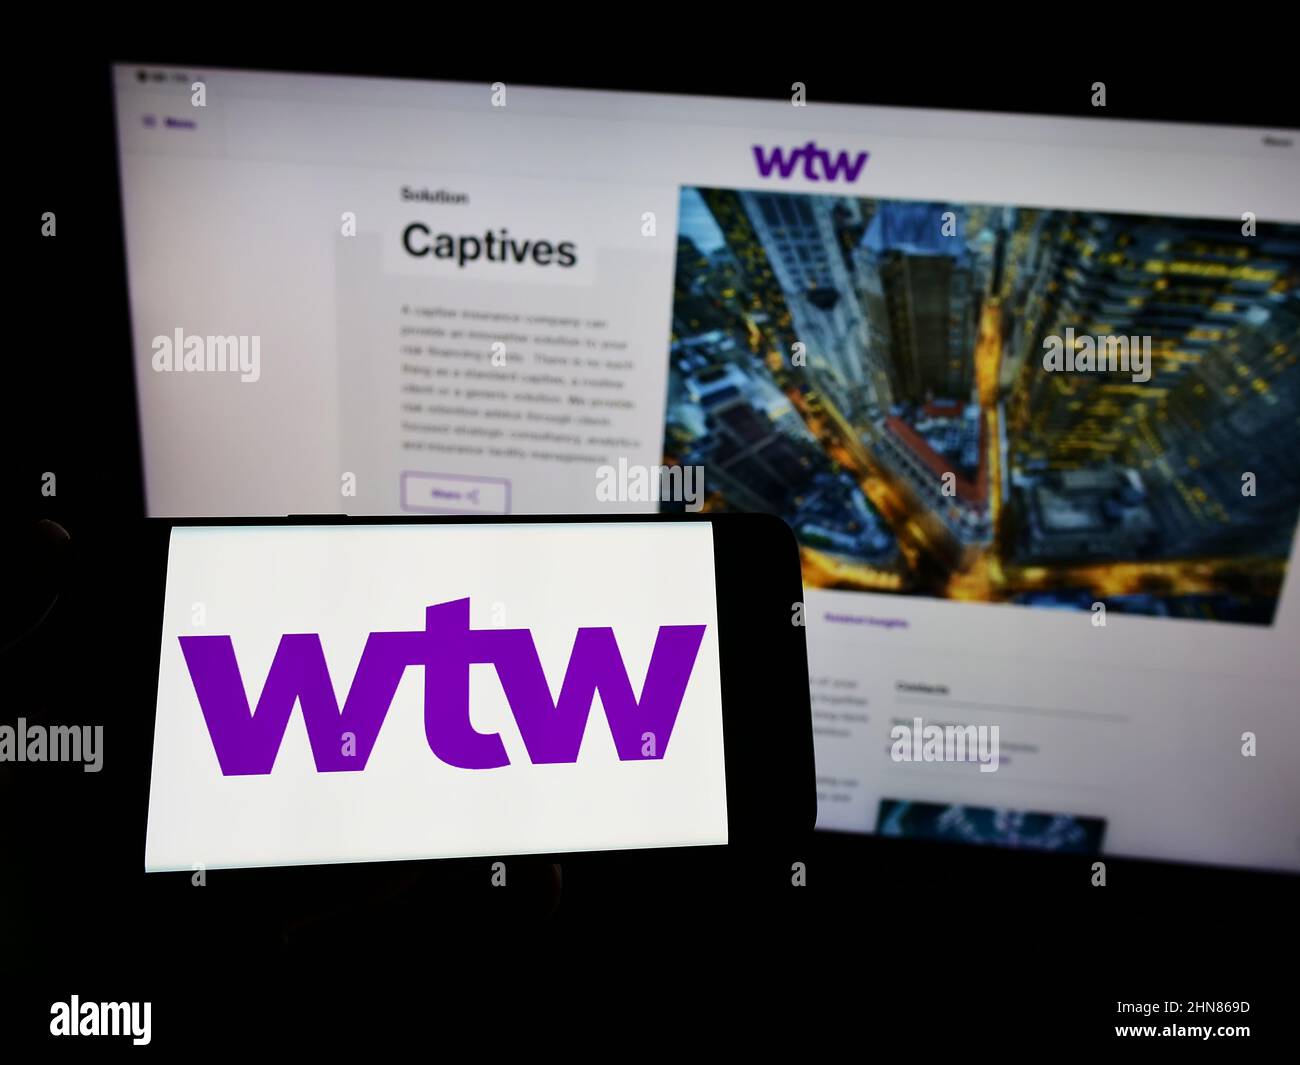 Persona che tiene smartphone con il logo della società finanziaria Willis Towers Watson plc (WTW) sullo schermo di fronte al sito web. Mettere a fuoco sul display del telefono. Foto Stock